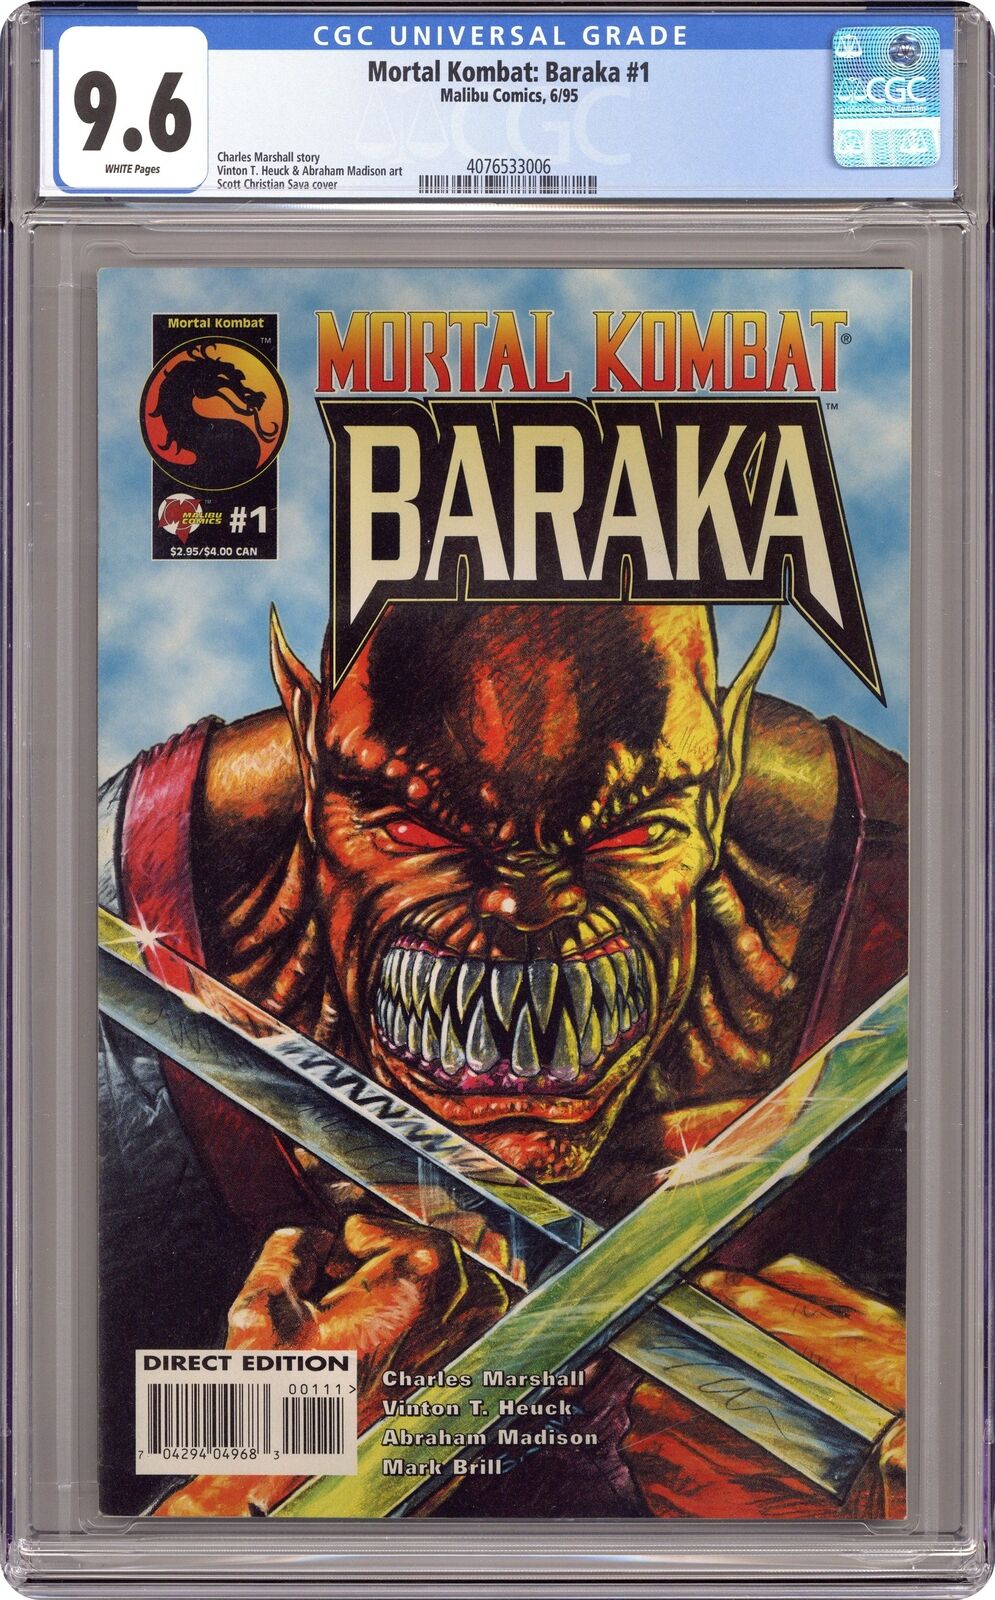 Mortal Kombat Baraka #1 CGC 9.6 1995 4076533006